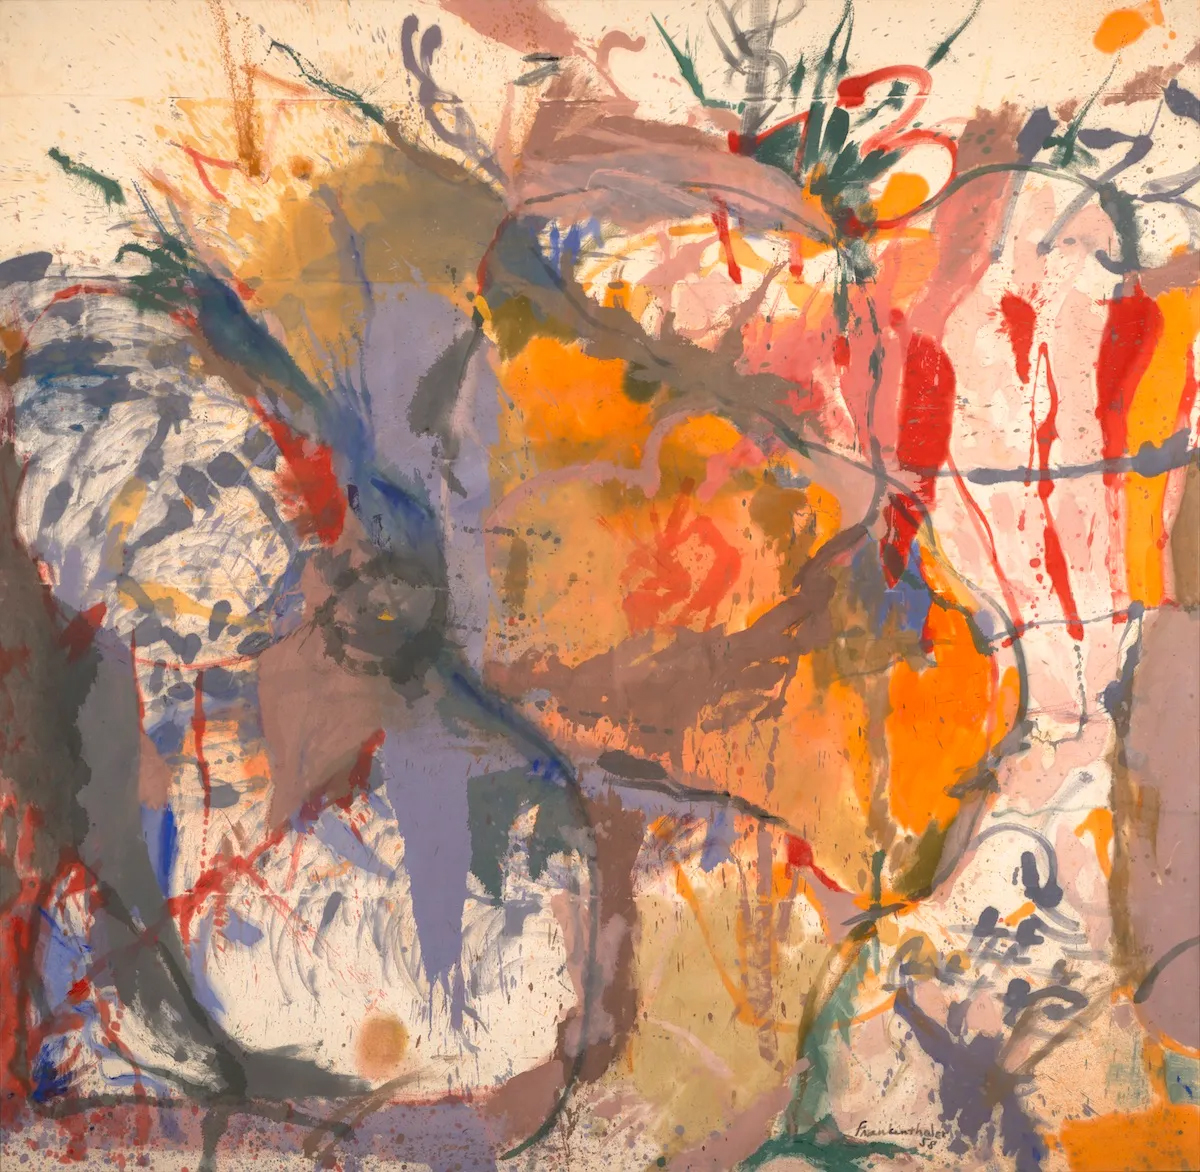 헬렌 프랑켄탈러(Helen Frankenthaler), 미국, 화가, 1928-2011